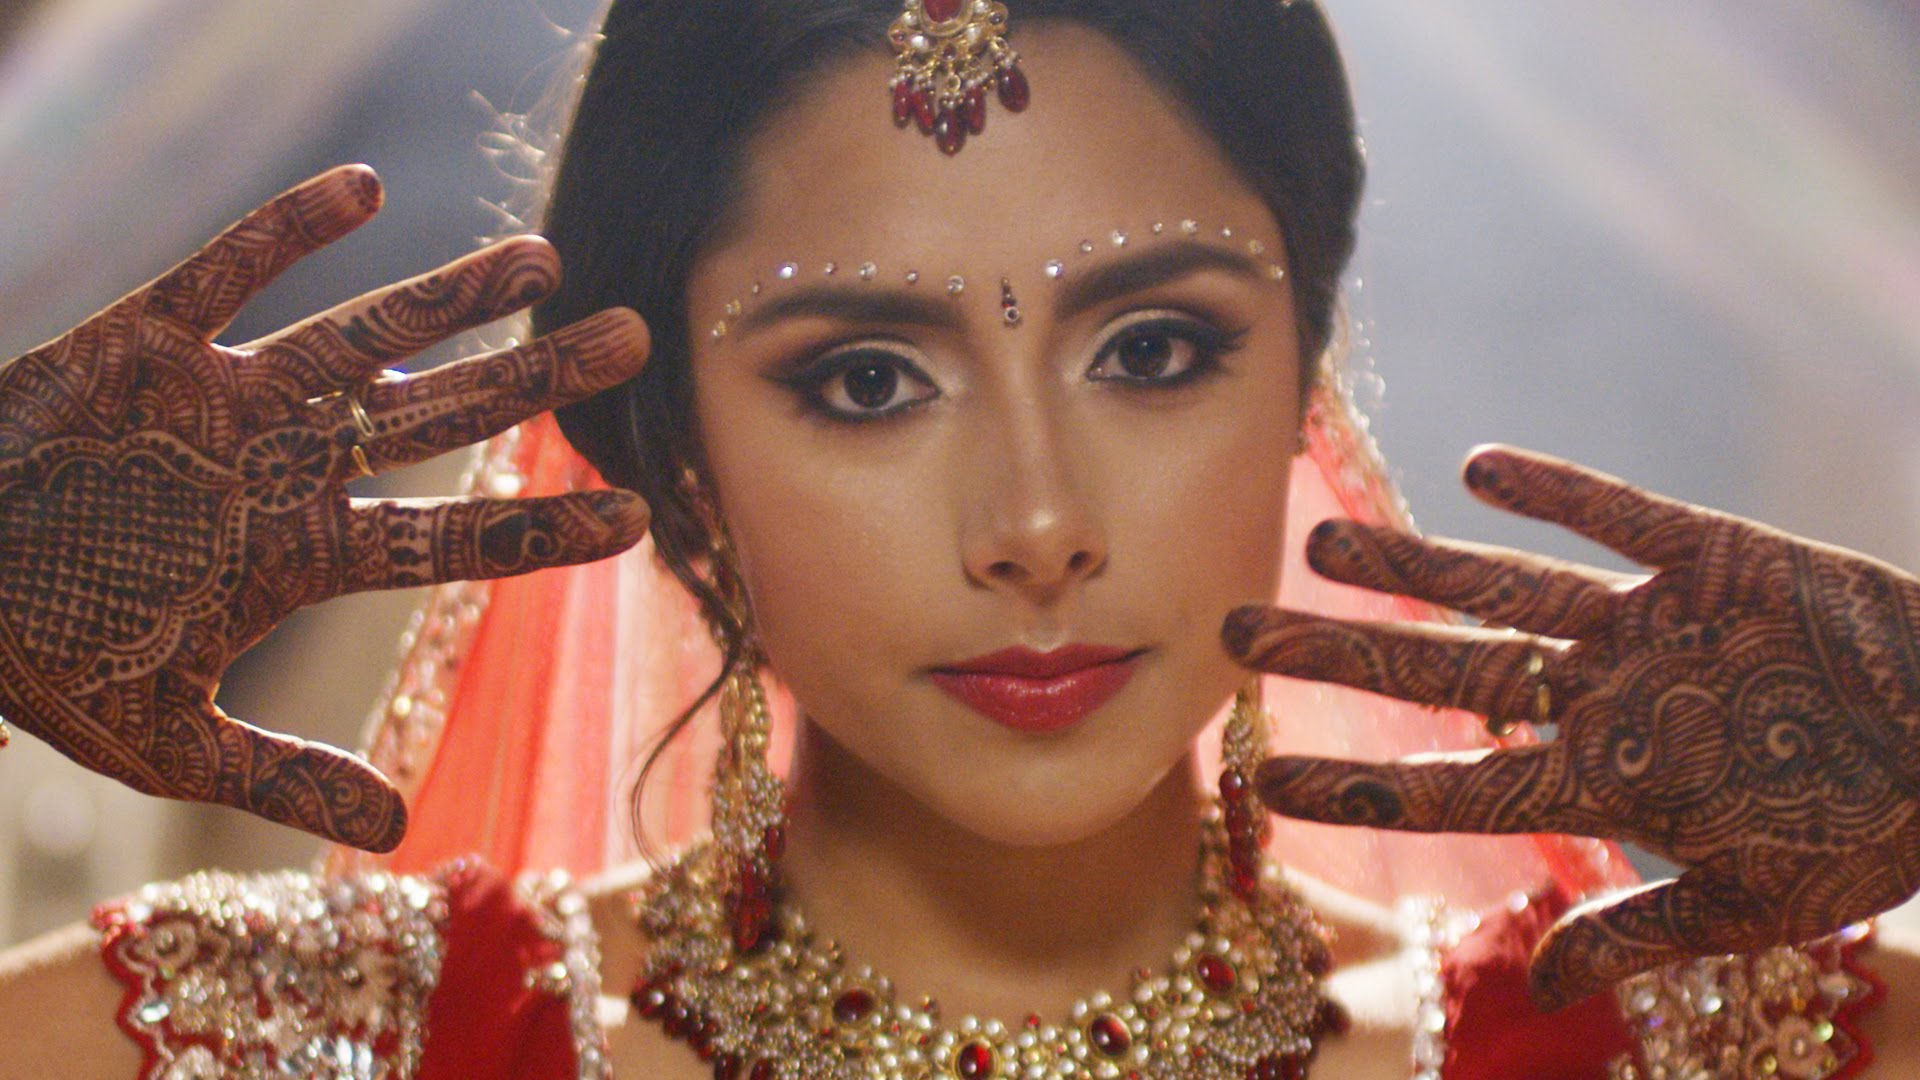 Iconic Indian Bridal Styles - YouTube